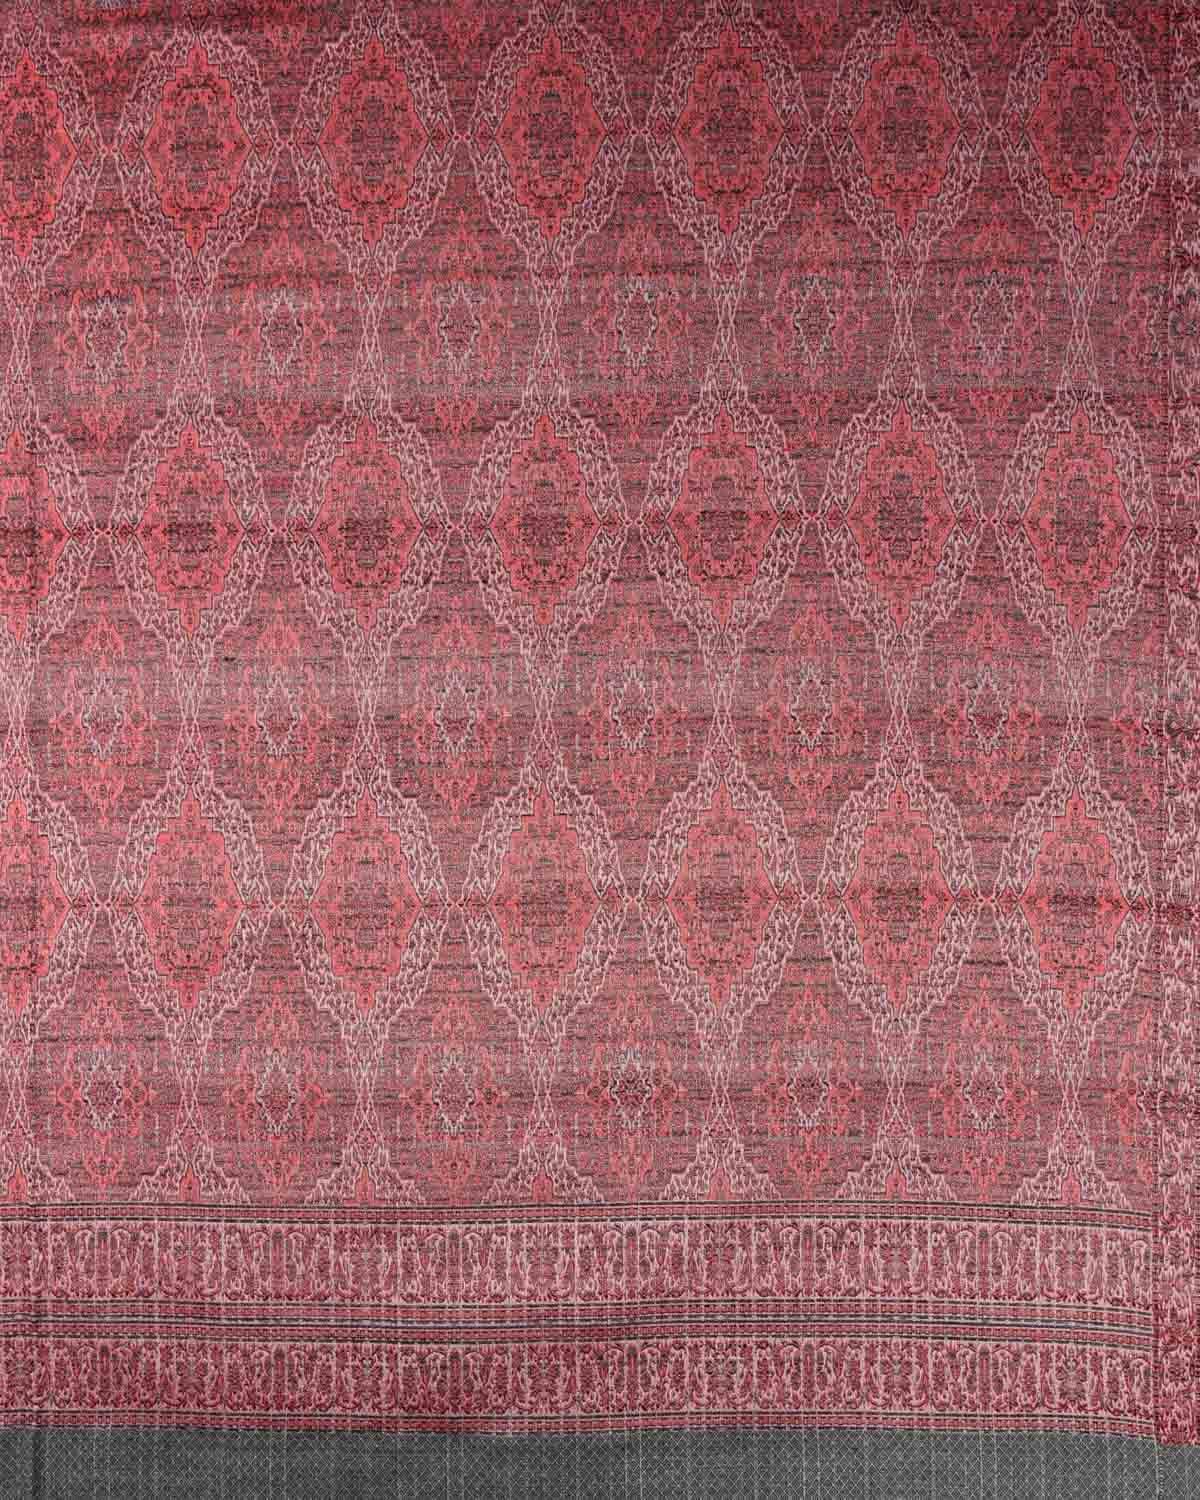 Red on Gray Banarasi Alfi Damask Jamawar Handwoven Silk-Wool Shawl - By HolyWeaves, Benares